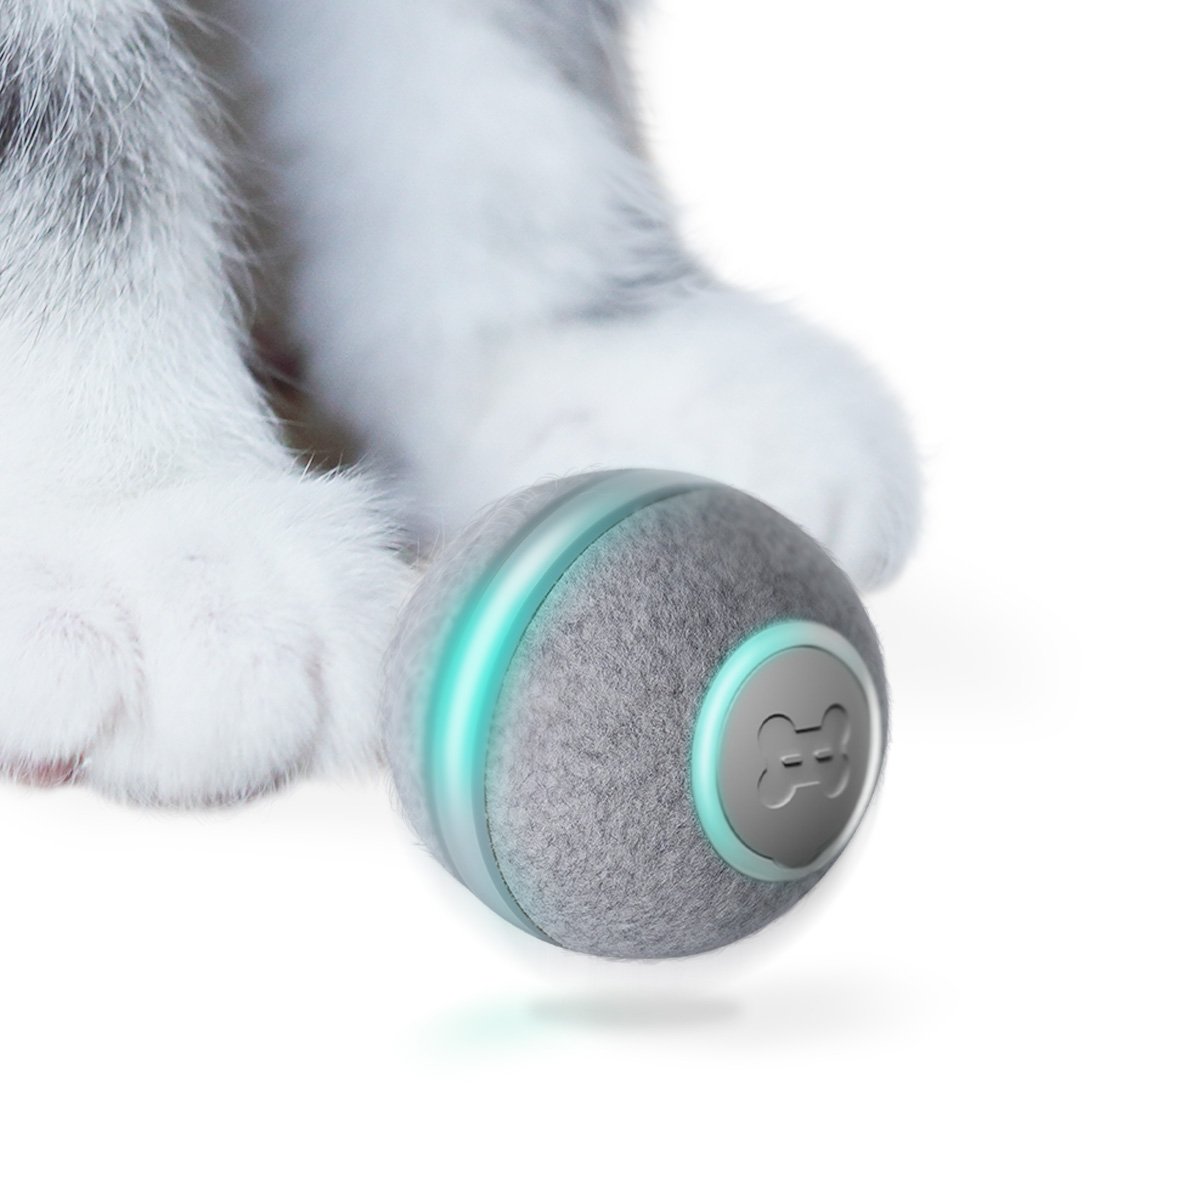 बिल्ली के लिए स्वचालित खिलौना - जयजयकार गेंद